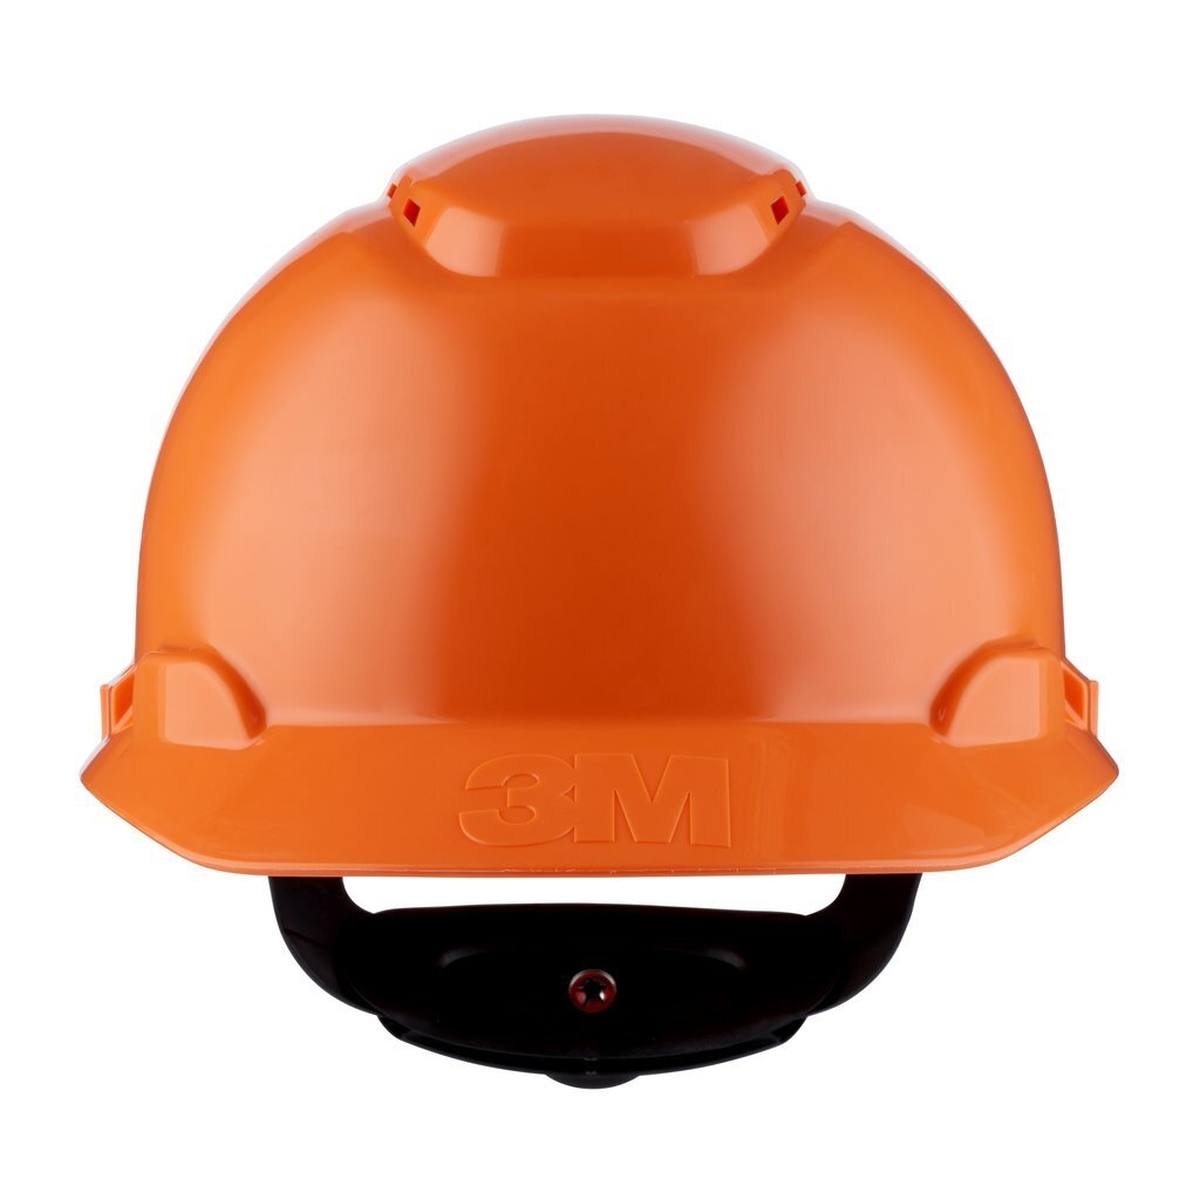 3M Schutzhelm H700-Serie H-700N-OR in Orange, belüftet, mit Ratsche und Kunststoffschweißband